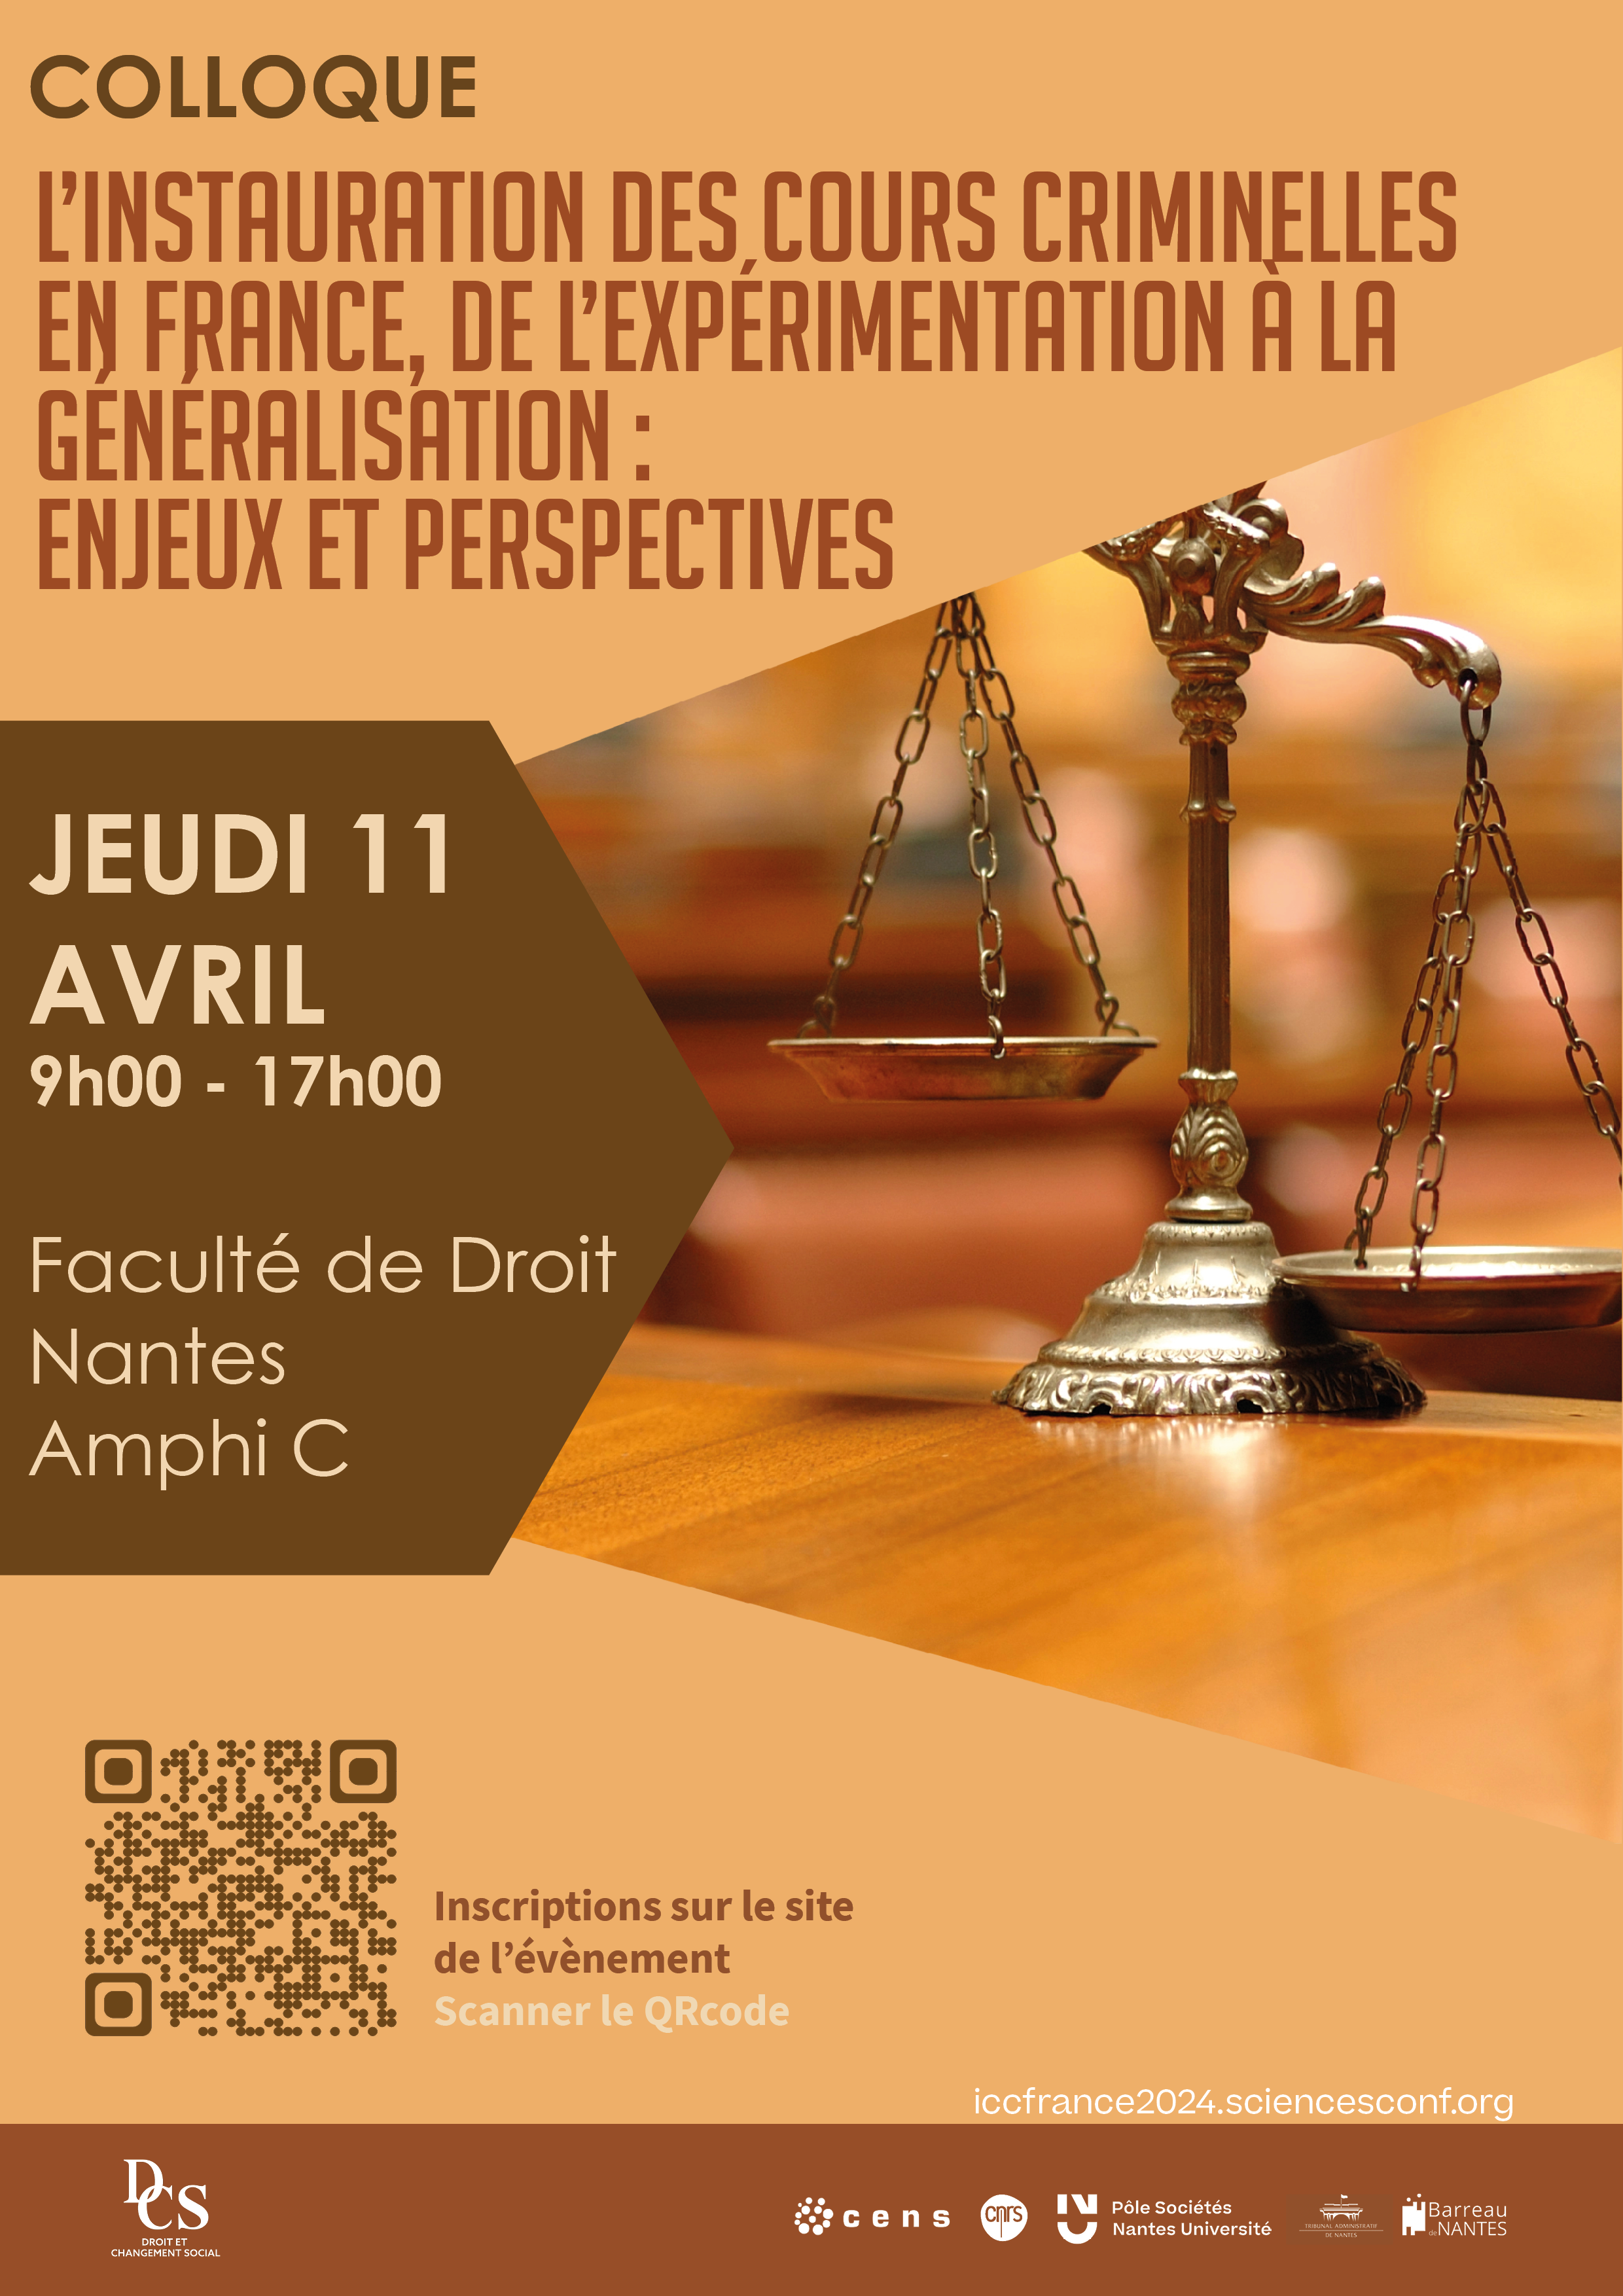 Colloque -  L'instauration des cours criminelles en France, de l'expérimentation à la généralisation : enjeux et perspectives